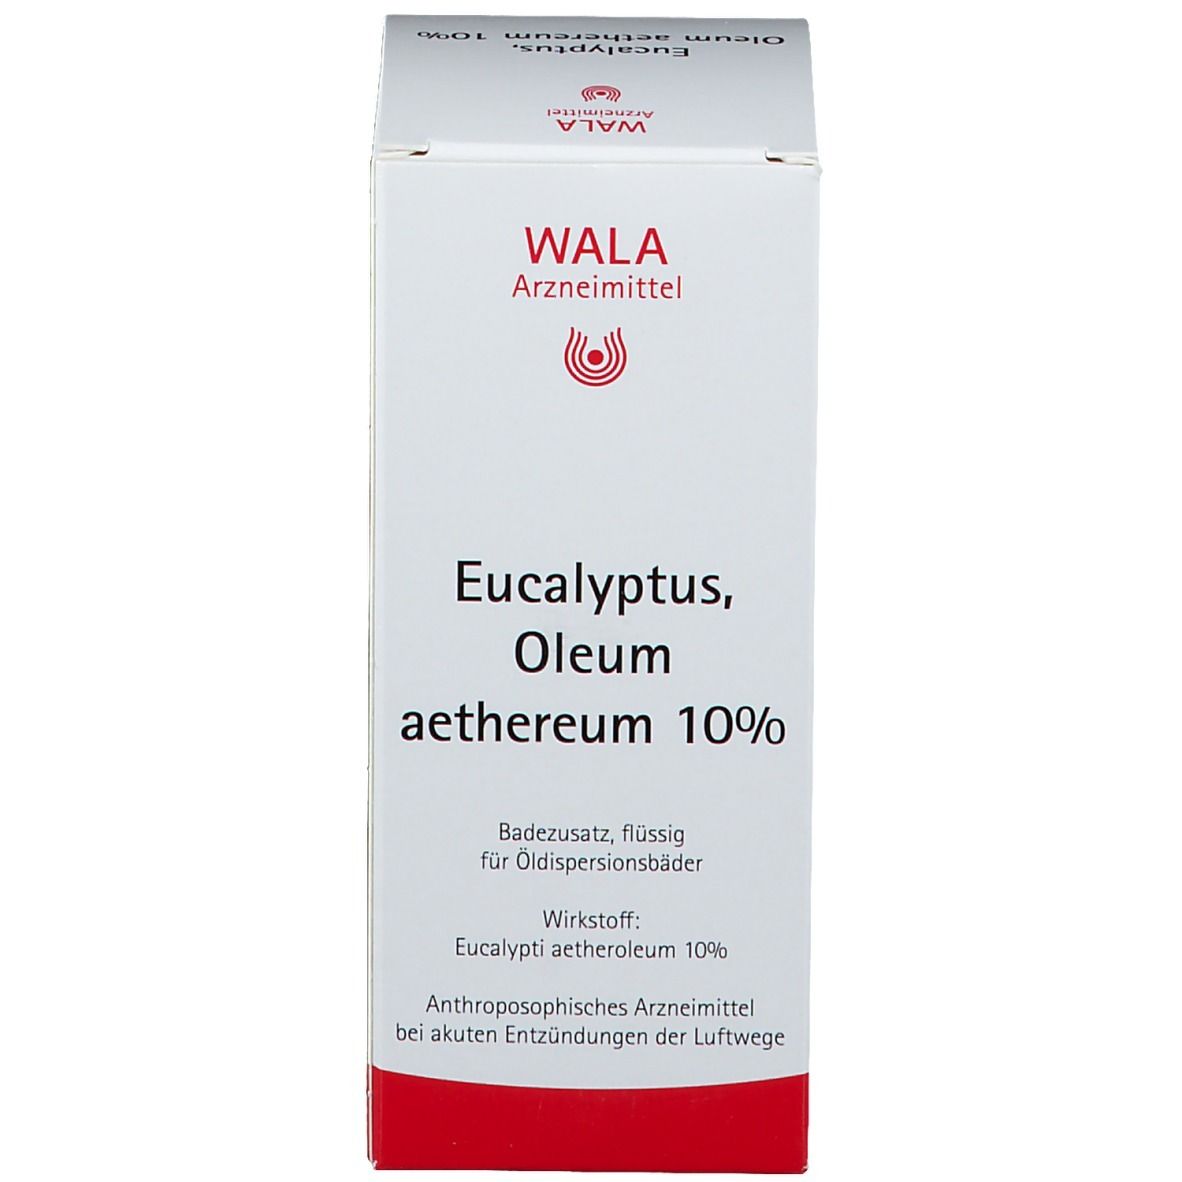 WALA® Eucalyptus Oleum aethereum 10% Badezusatz